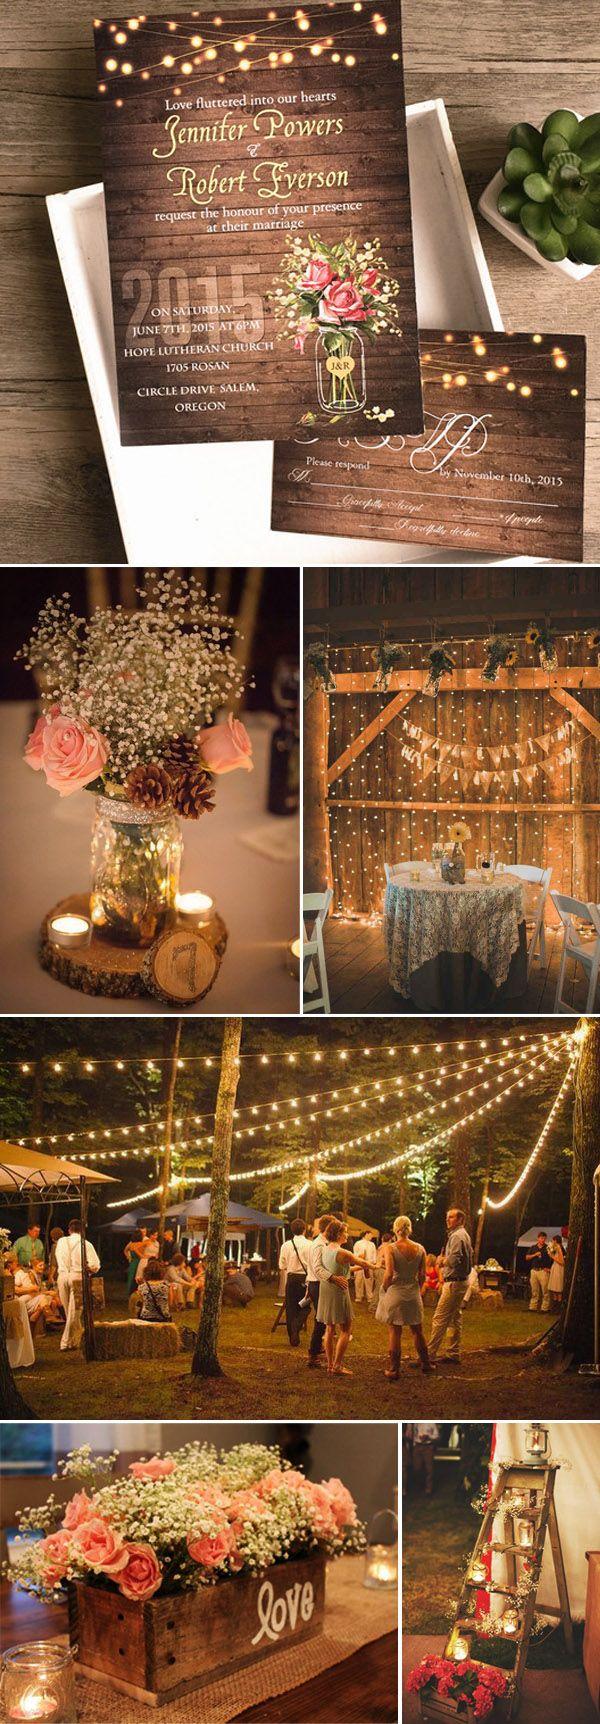 زفاف - Seven Popular Rustic Wedding Invitation Styles For 2016 Spring & Summer Weddings